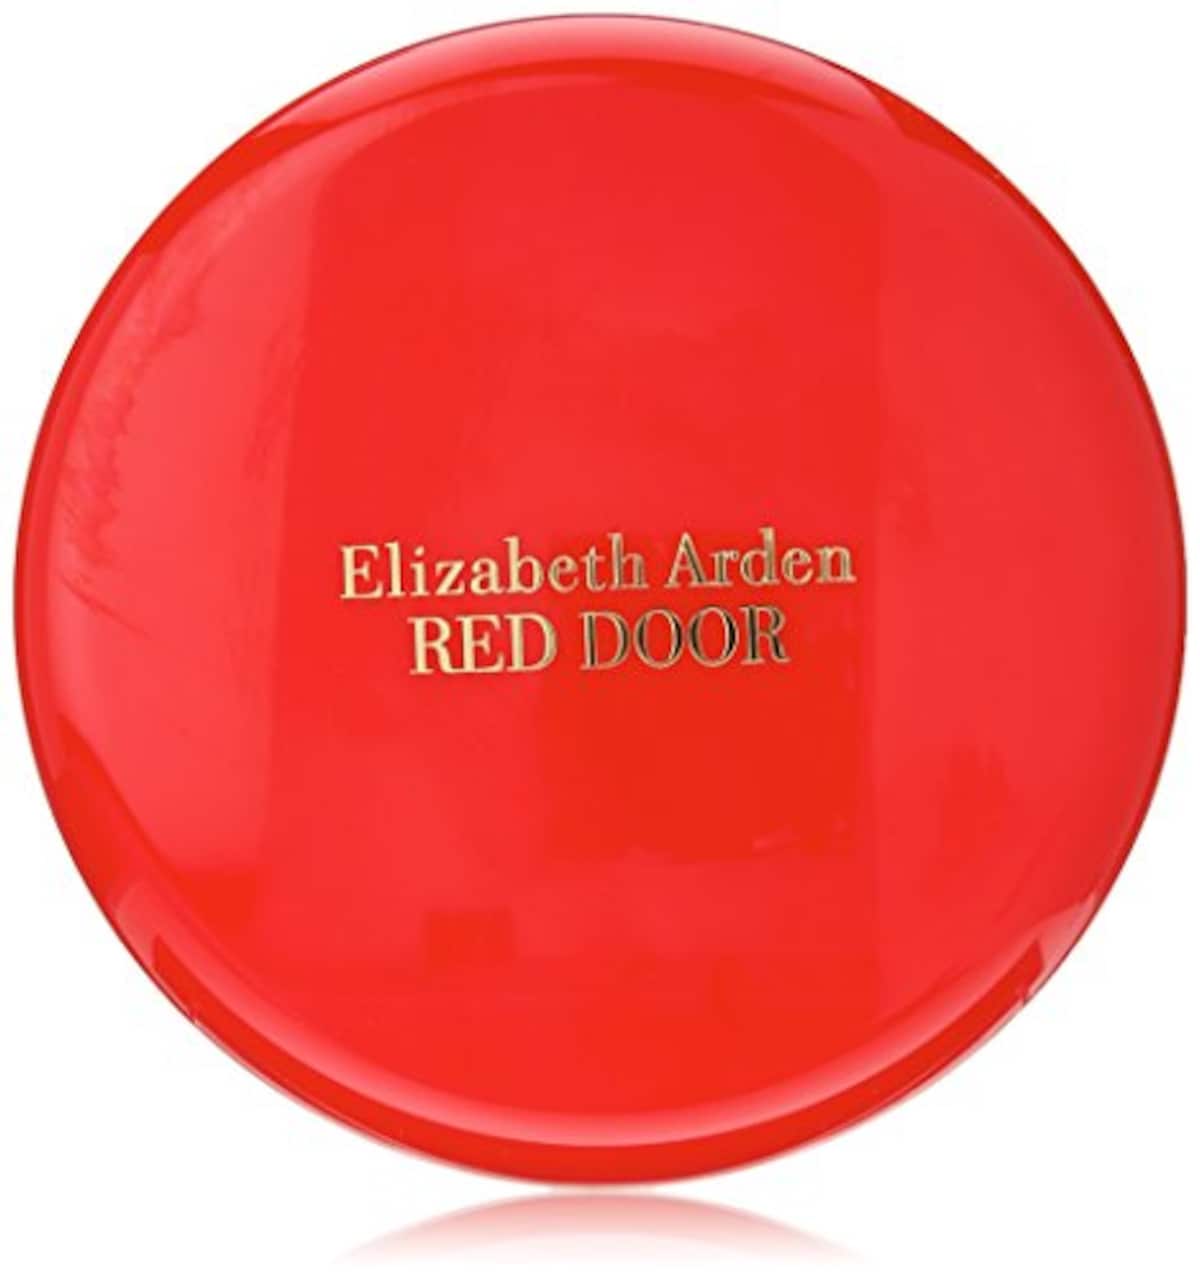 RED DOOR Perfumed Body Powder